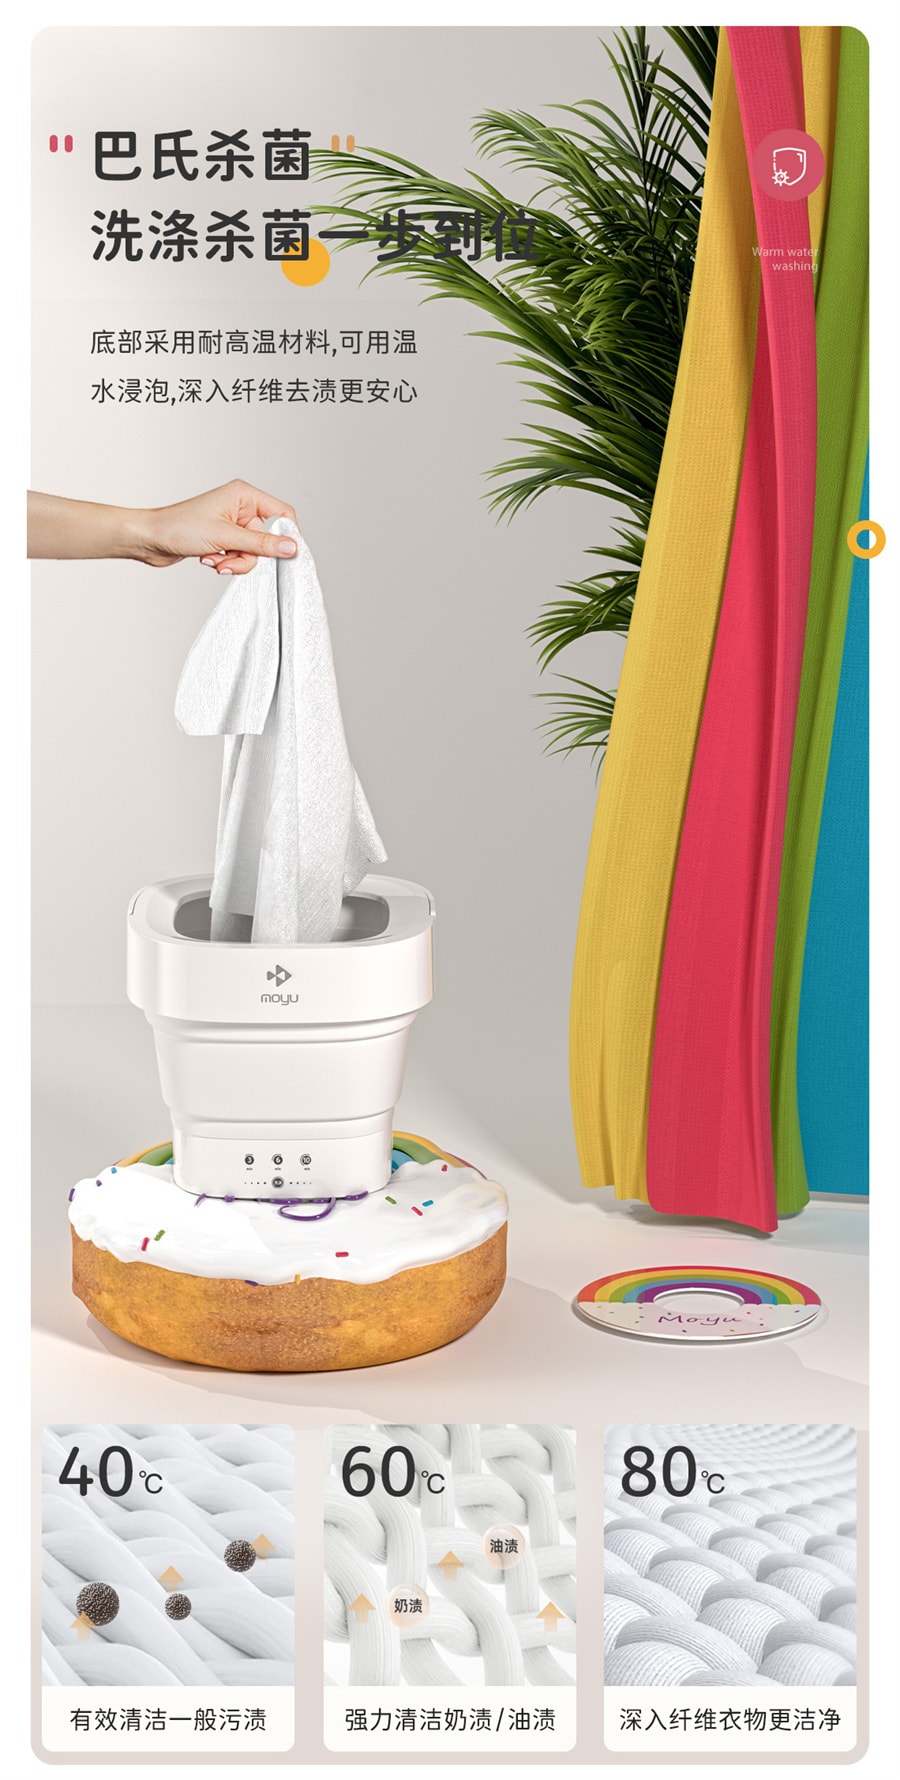 【美国极速发货】摩鱼 迷你折叠洗衣机  小型便携内衣内裤清洗机   MINI01-S甜甜圈 美规版